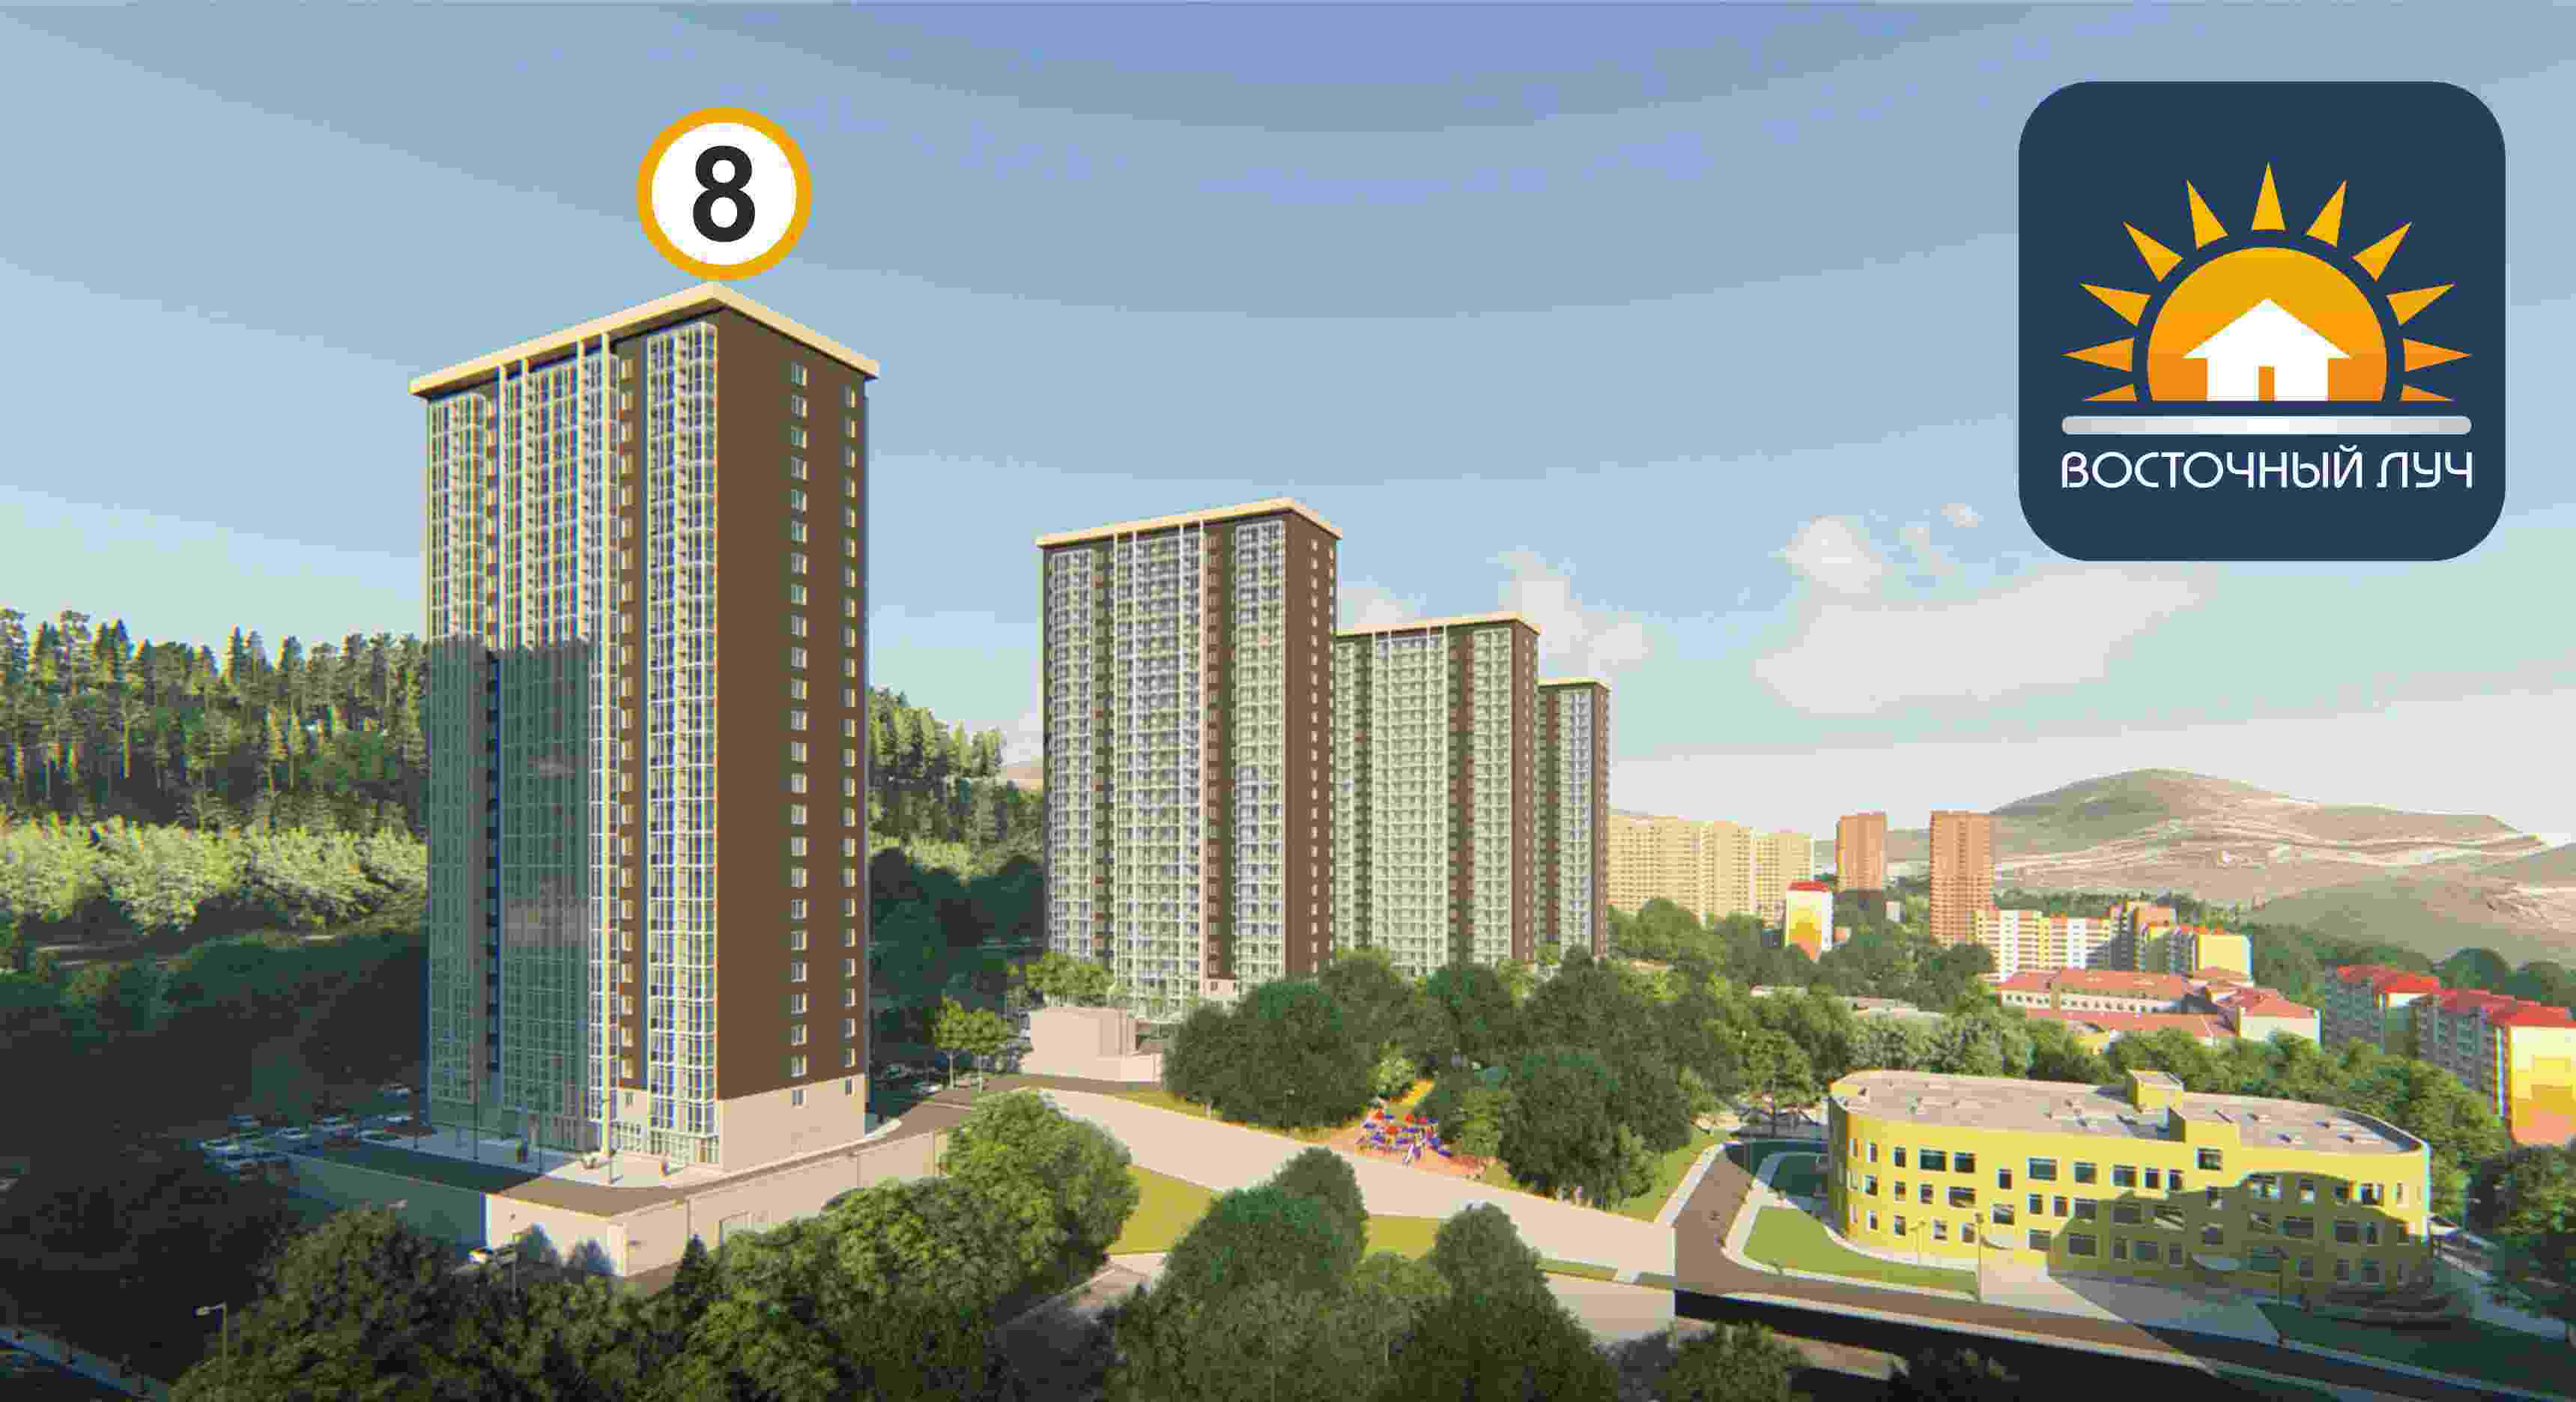 ЖК Восточный луч 1 очередь, строение 8, ввод в эксплуатацию: I кв. 2024, продажа квартир - 0 кв.